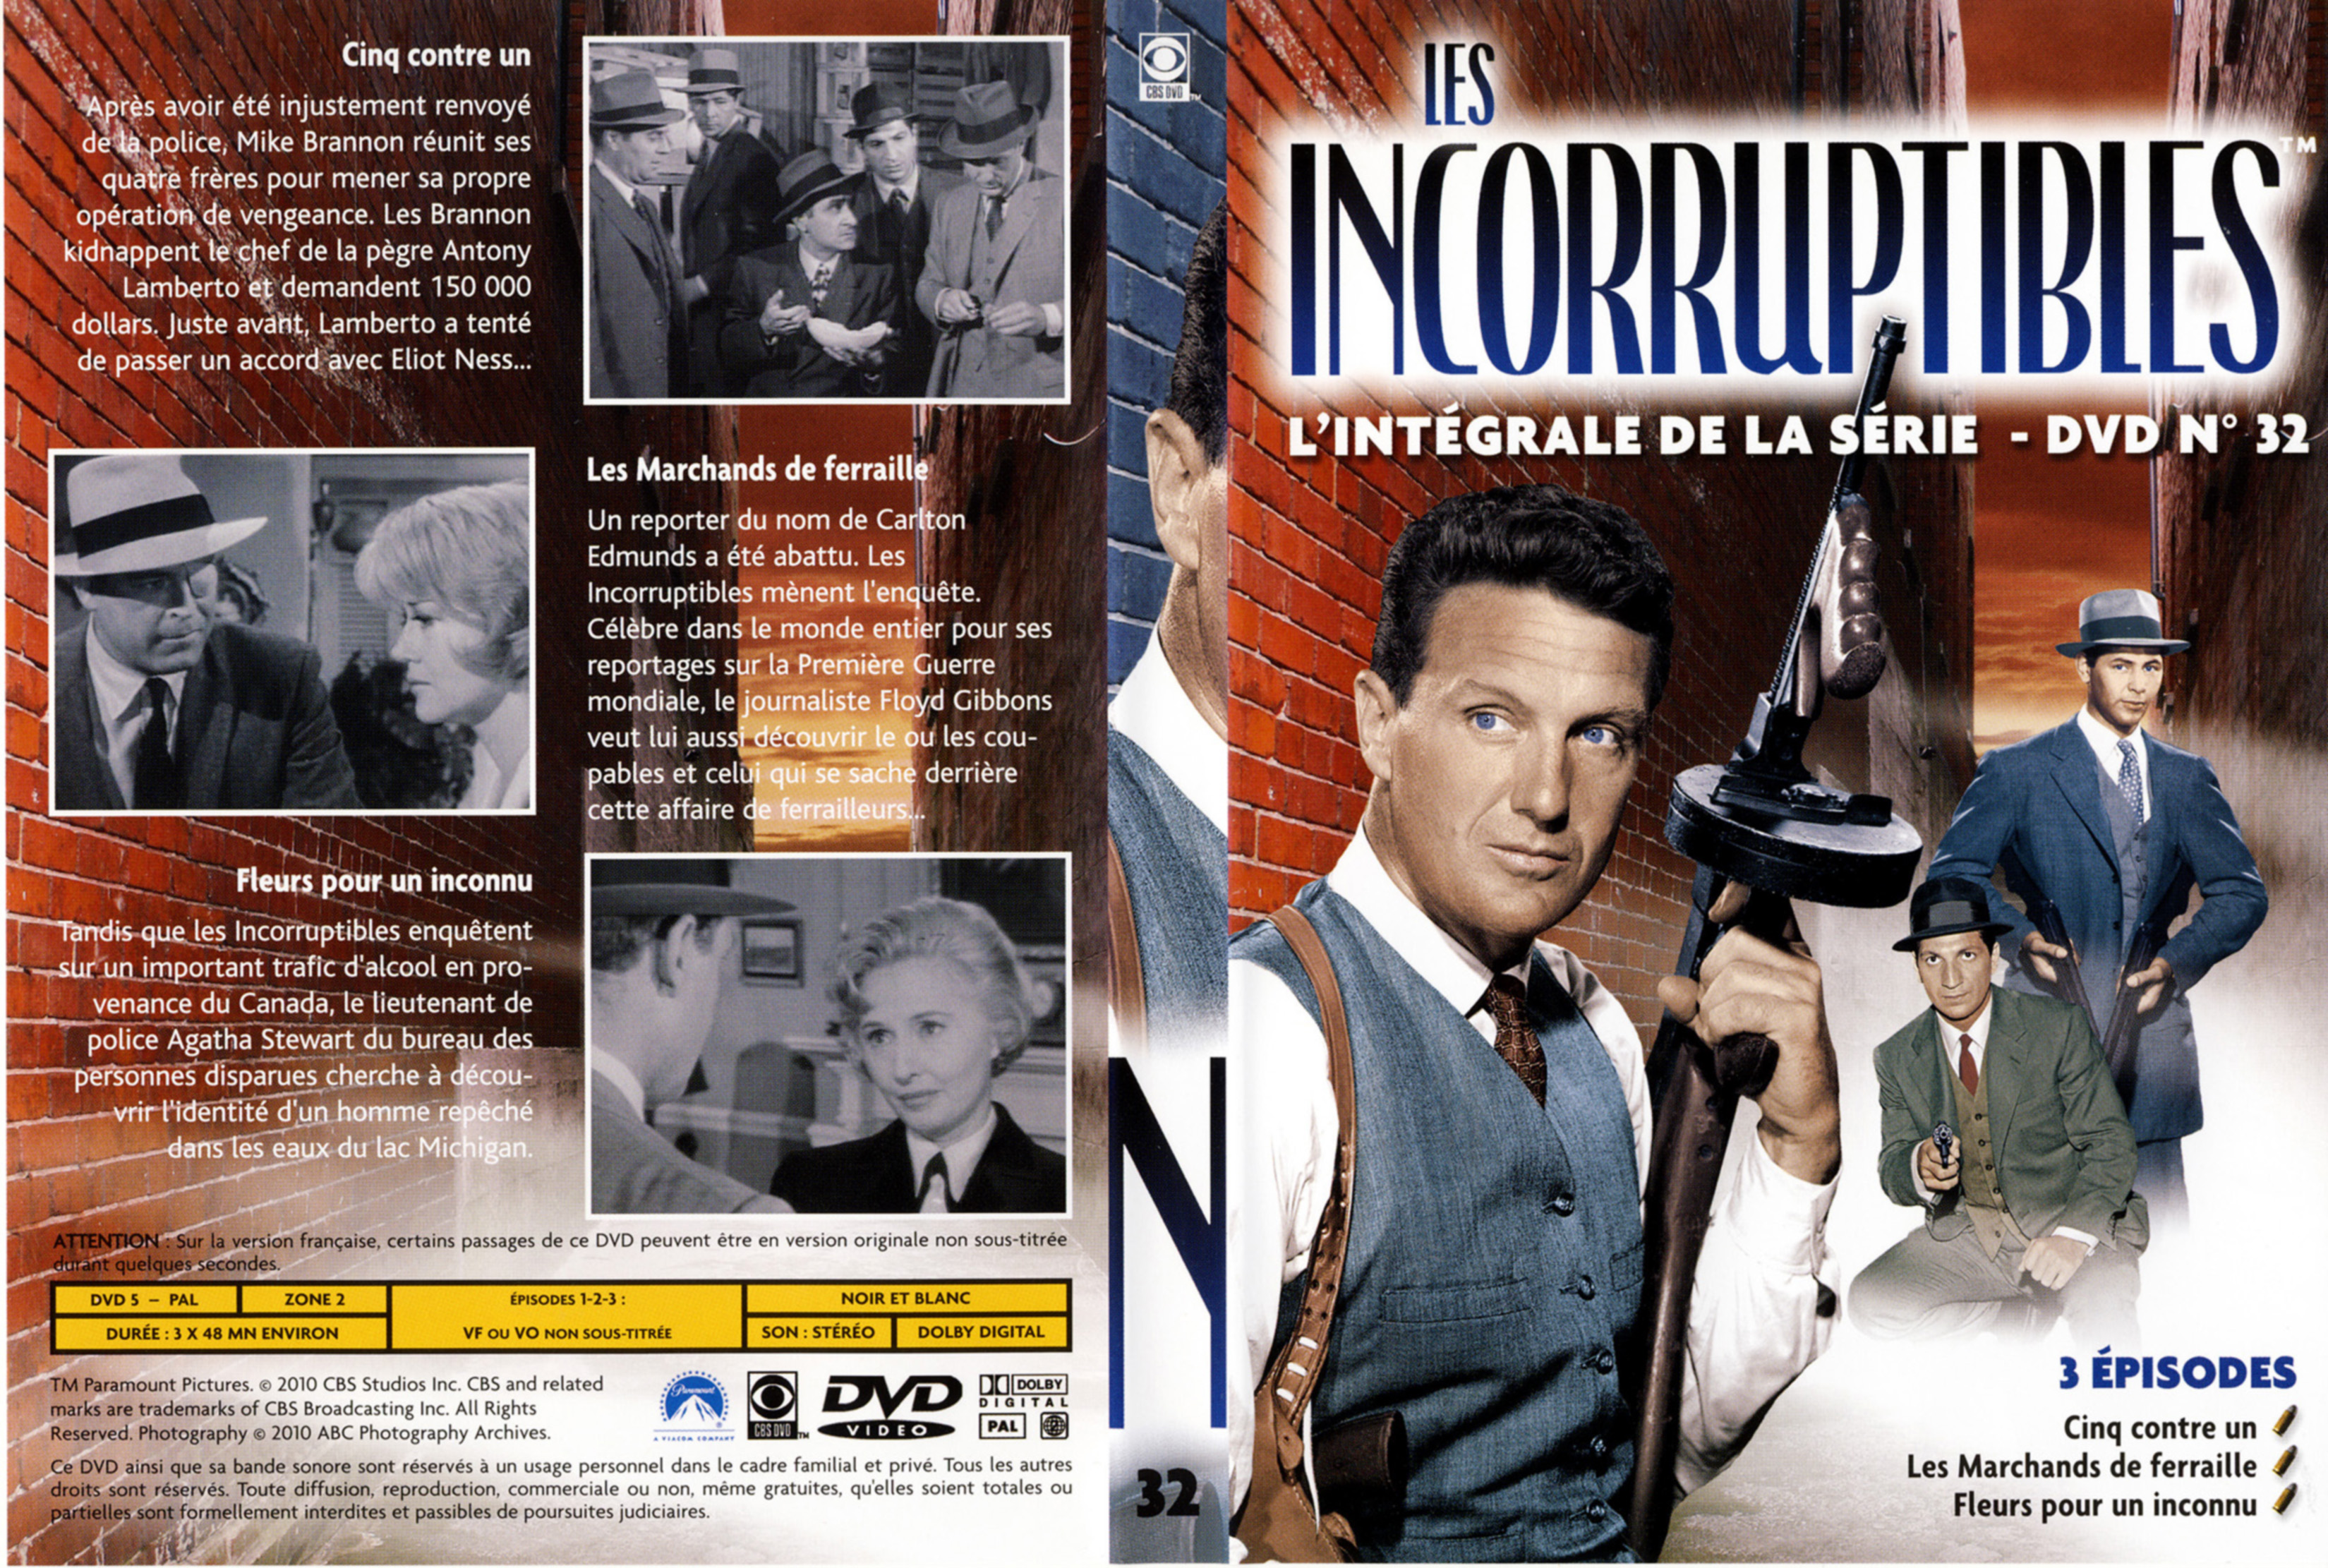 Jaquette DVD Les incorruptibles intgrale DVD 32